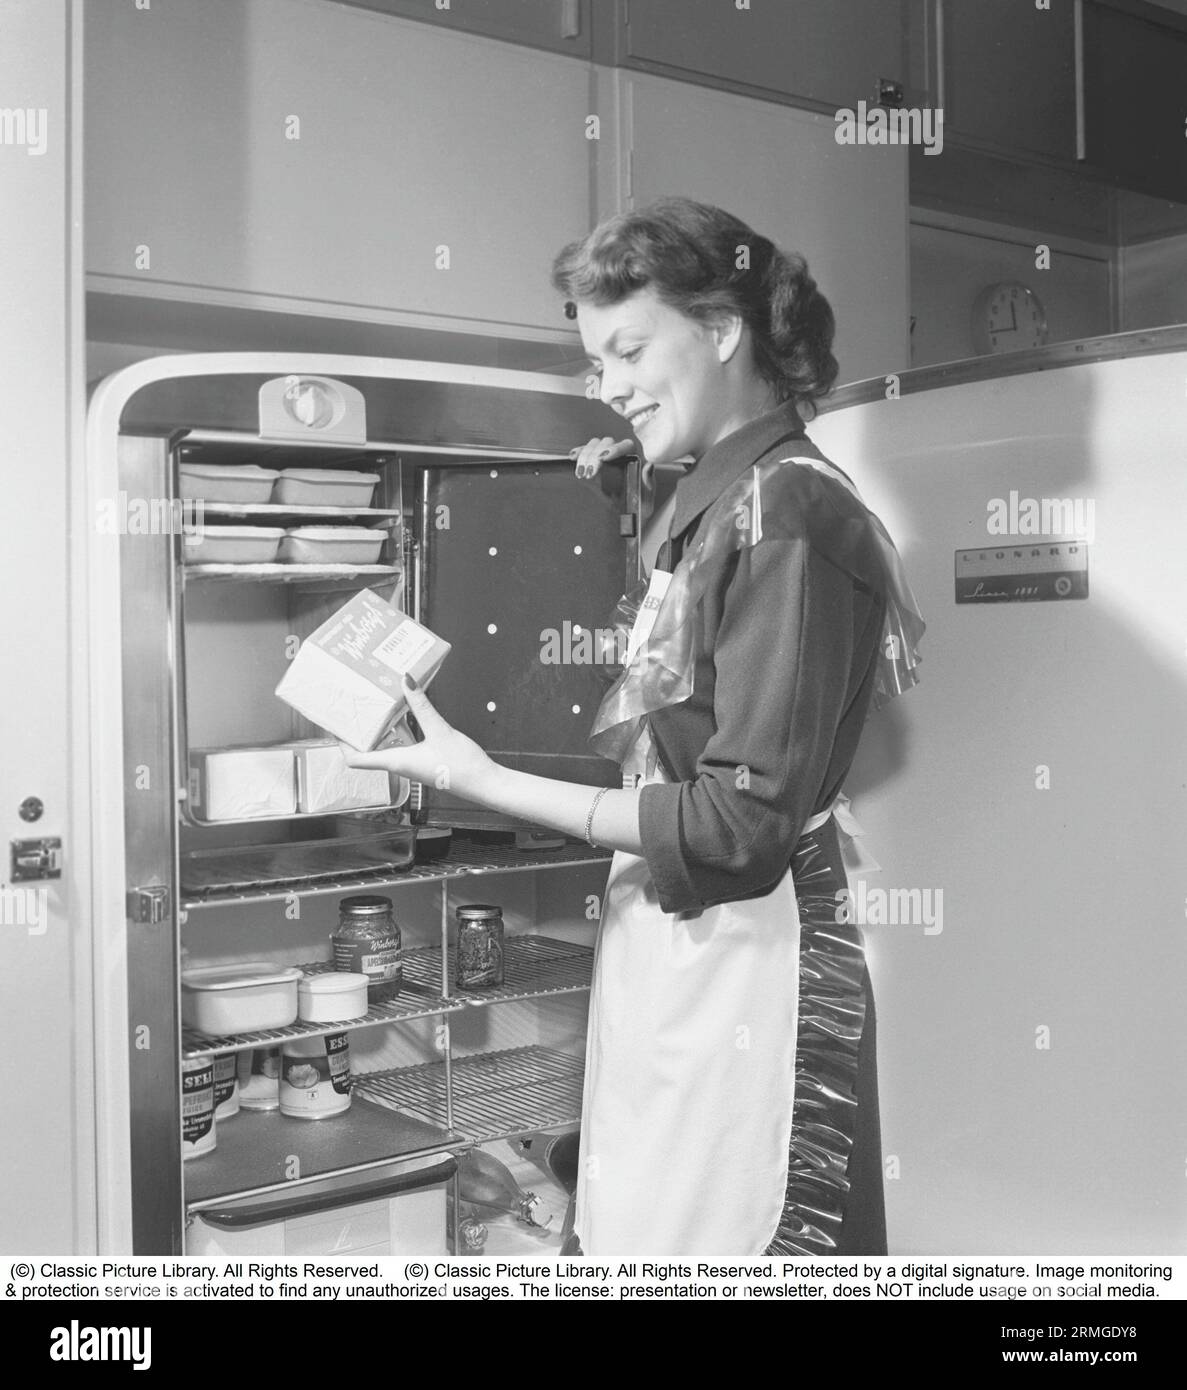 Dans la cuisine 1950s. Intérieur d'une cuisine et une jeune femme debout au réfrigérateur Leonard avec sa porte ouverte, montrant les boîtes et les bouteilles de différents aliments debout sur les étagères. Une armoire de congélation séparée est intégrée dans le réfrigérateur, une fonctionnalité assez nouvelle à ce moment. Elle porte un tablier en plastique. Elle est Haide Göransson, 1928-2008, mannequin et actrice. Suède 1950 Kristoffersson ref AU22-10 Banque D'Images